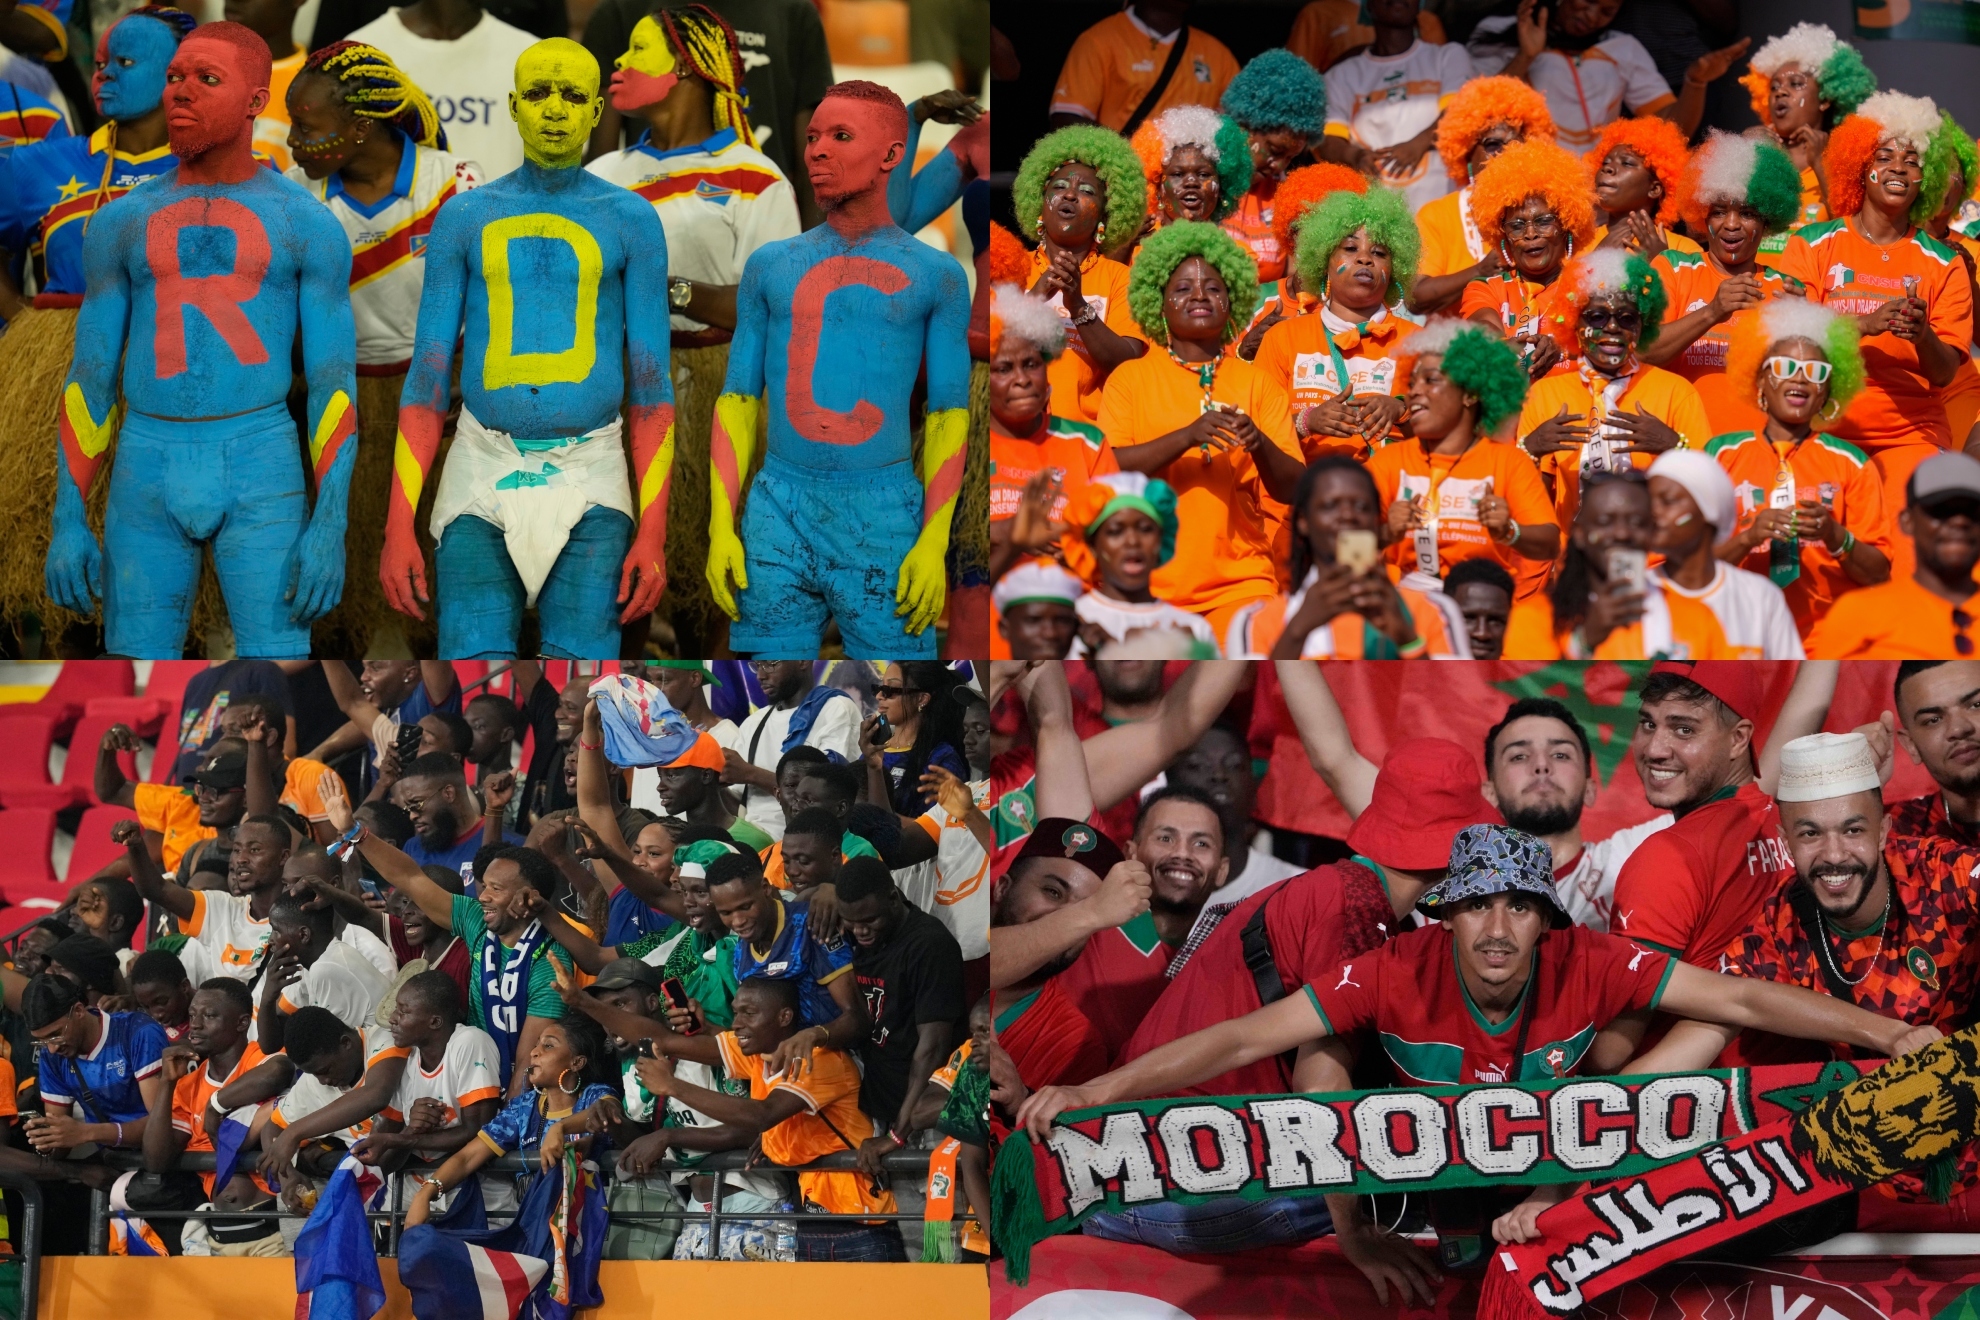 Los aficionados de RD Congo, Costa de Marfil, Cabo Verde y Marruecos celebran en la Copa África.